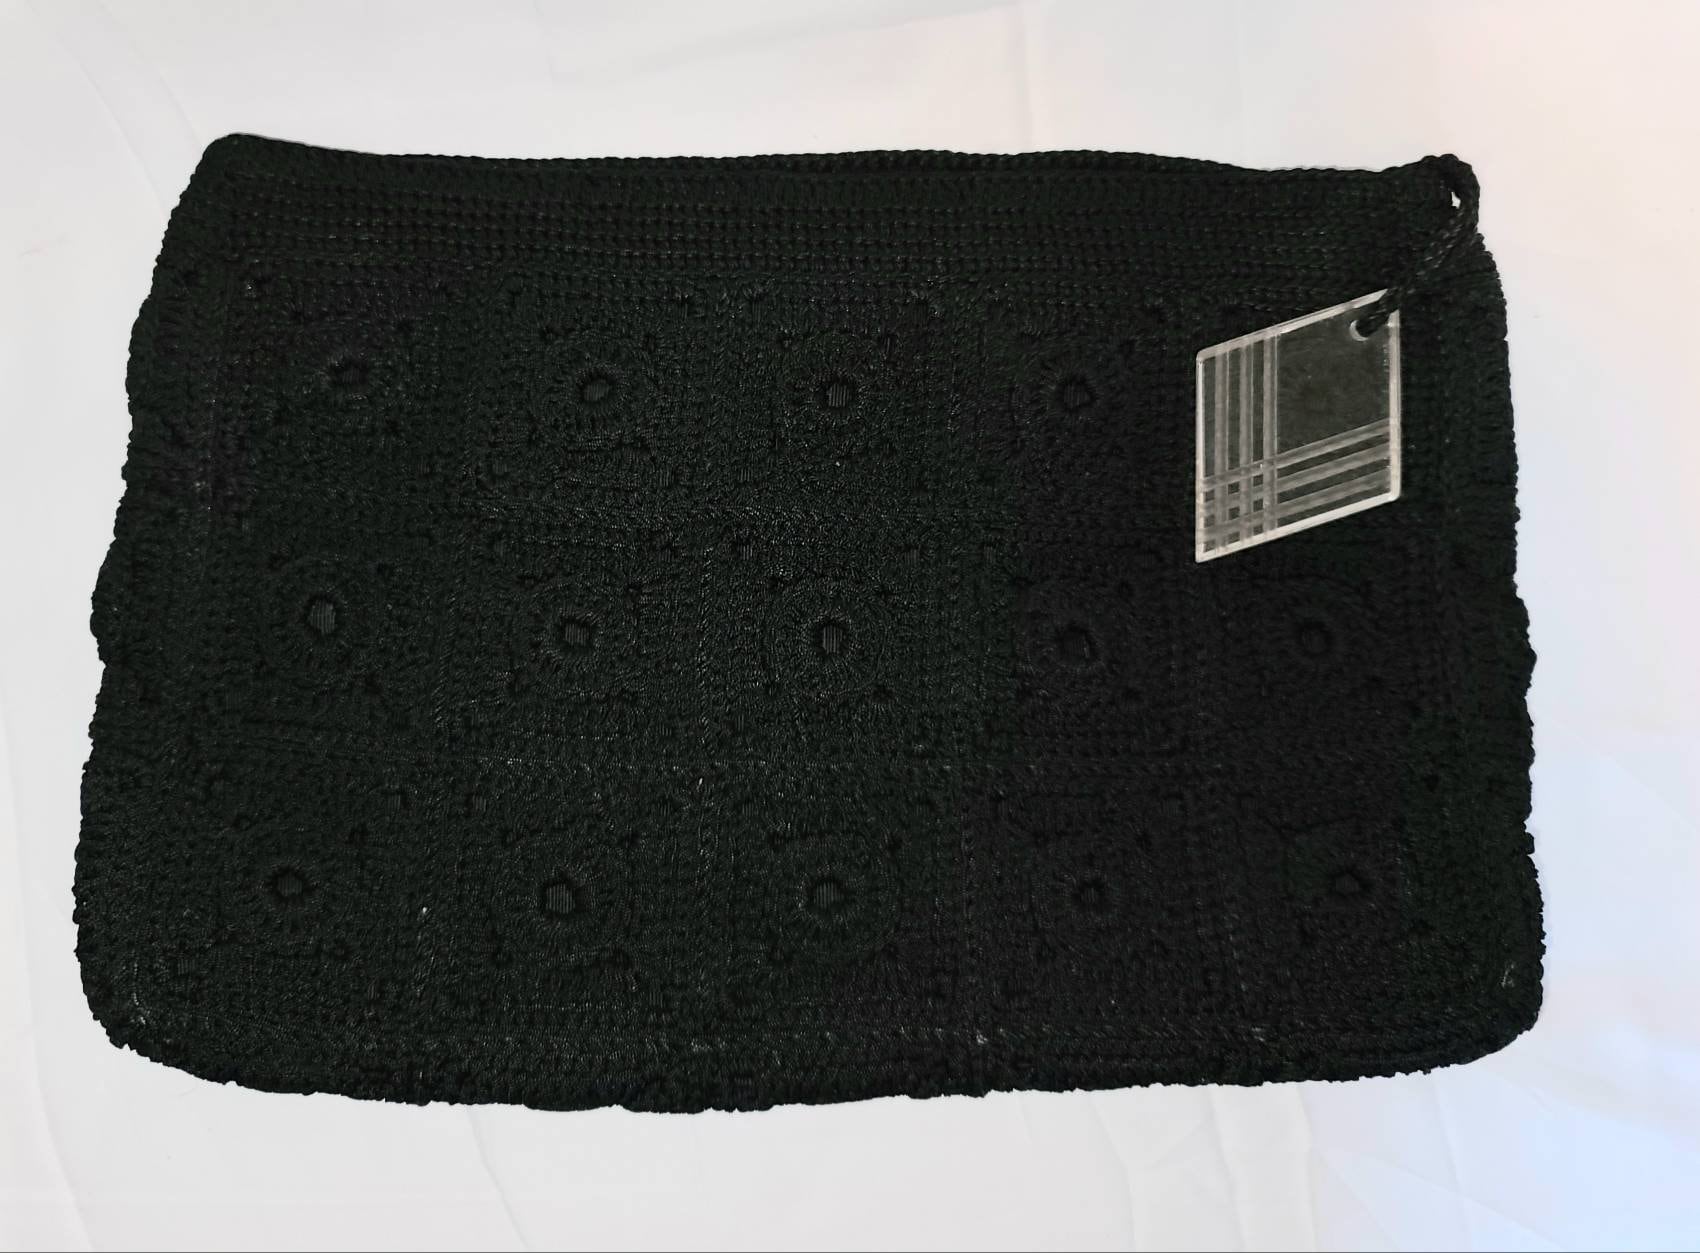 SALE Vintage 1940s Purse Large Black Crochet Clutch Handbag Carved ...